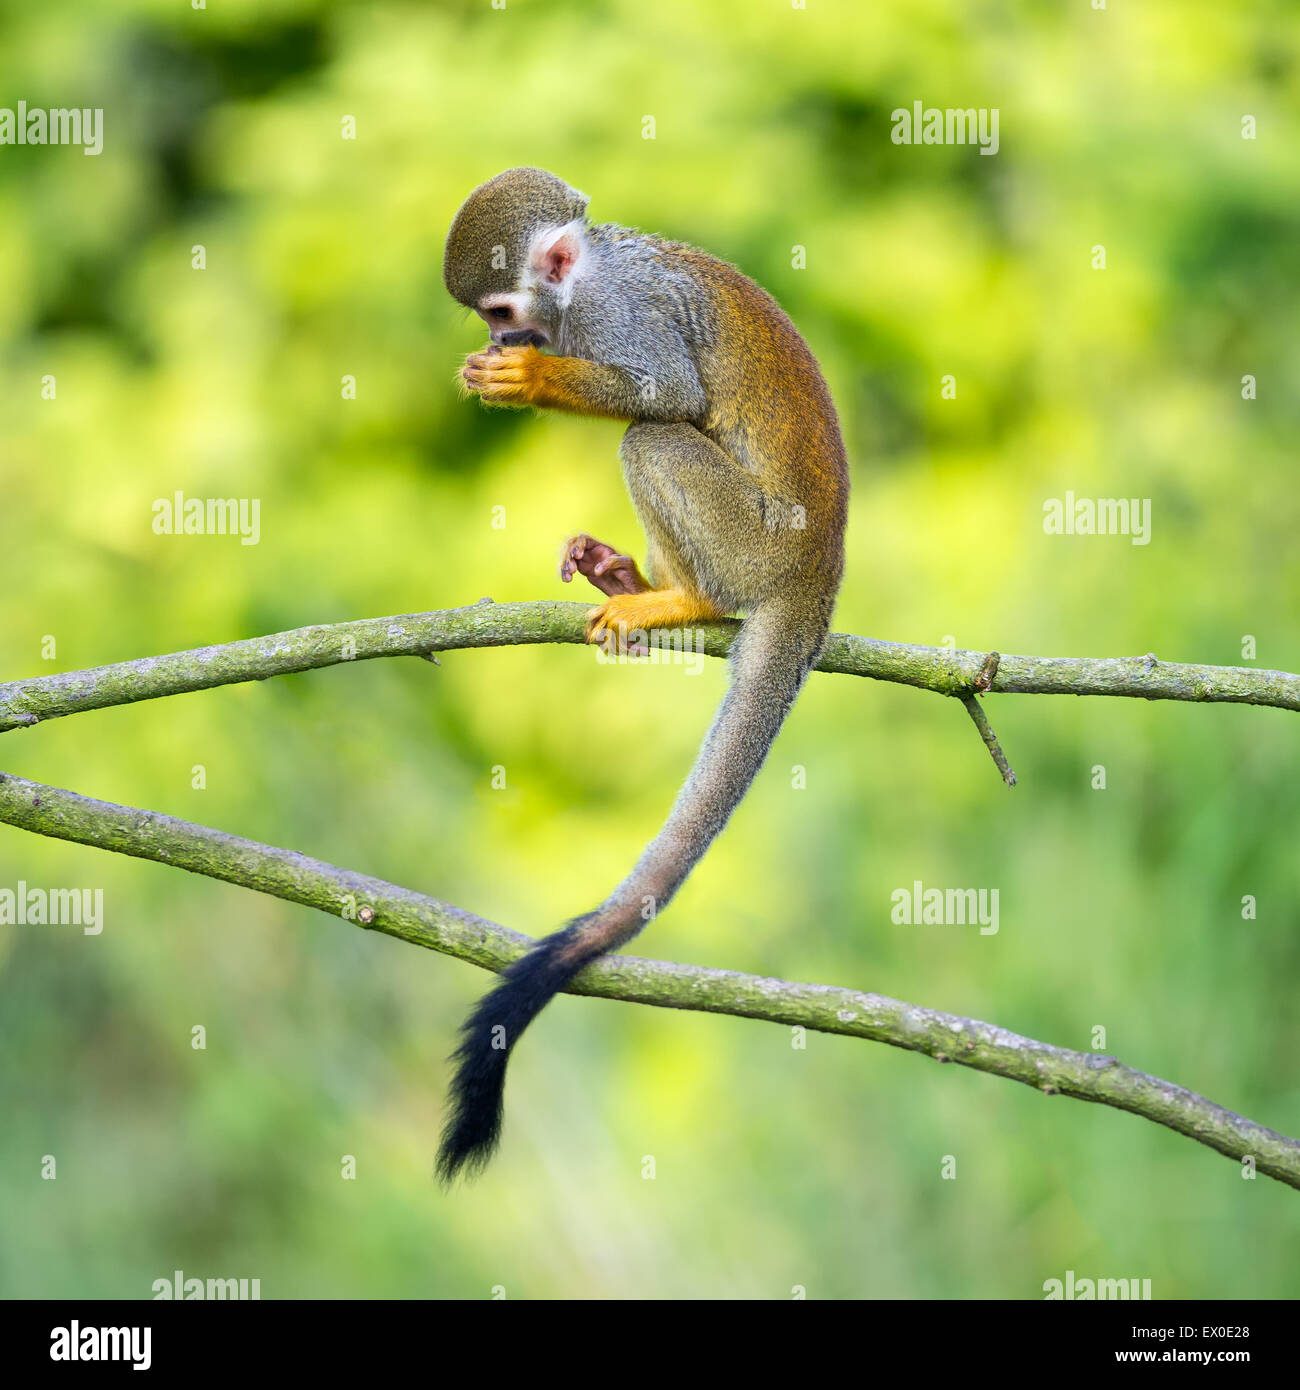 Portrait de singe écureuil (Saimiri sciureus) assis sur une branche d'arbre Banque D'Images